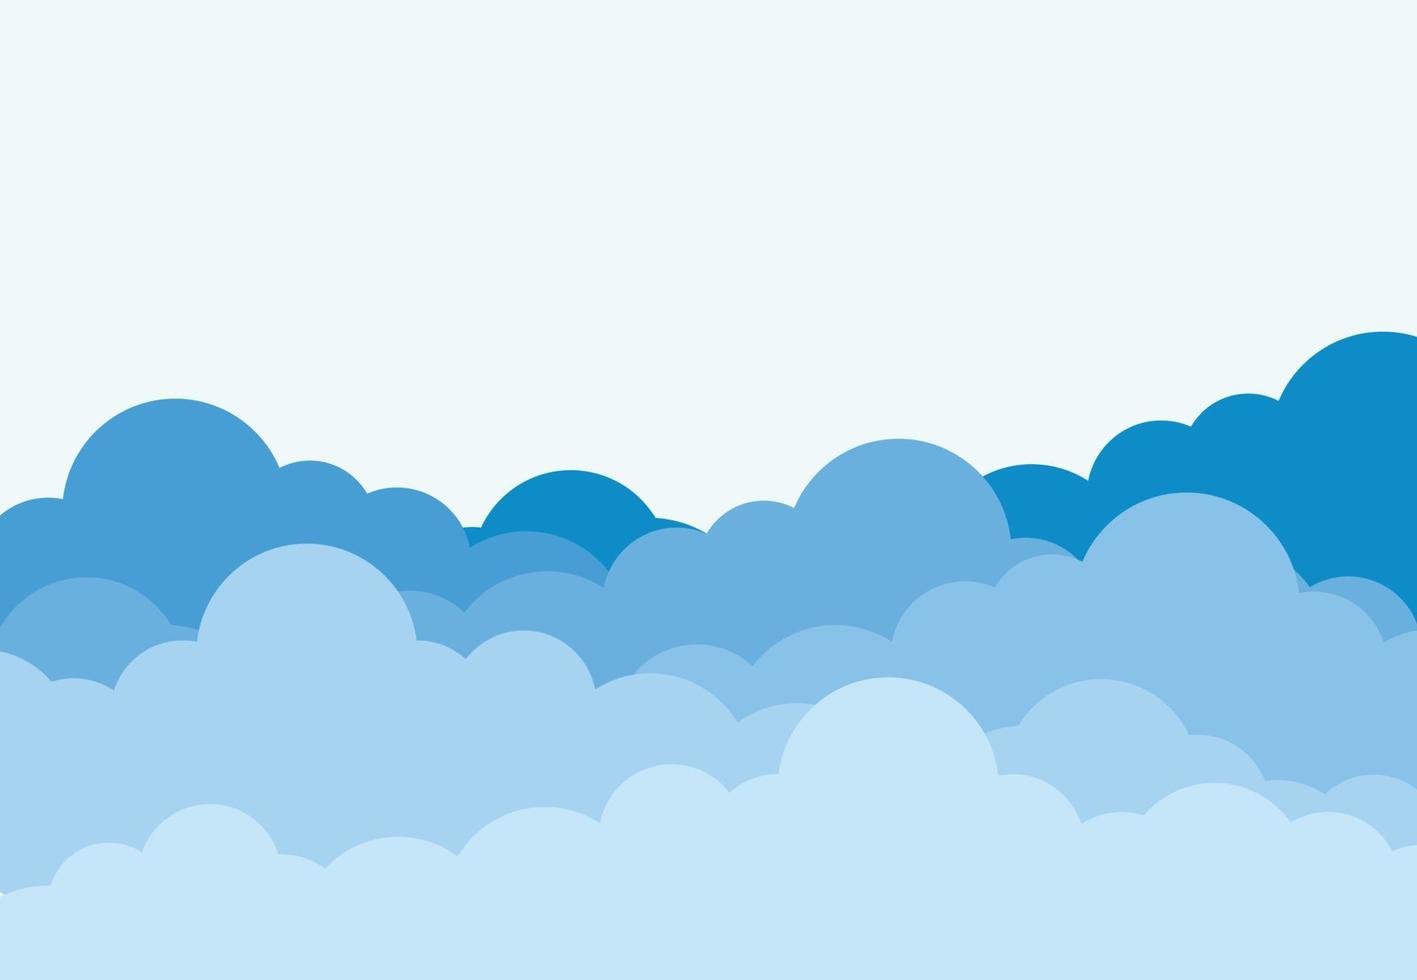 céu azul com nuvens para pôster, apresentação, espaço em branco do conceito de design do site para texto. ilustração vetorial vetor